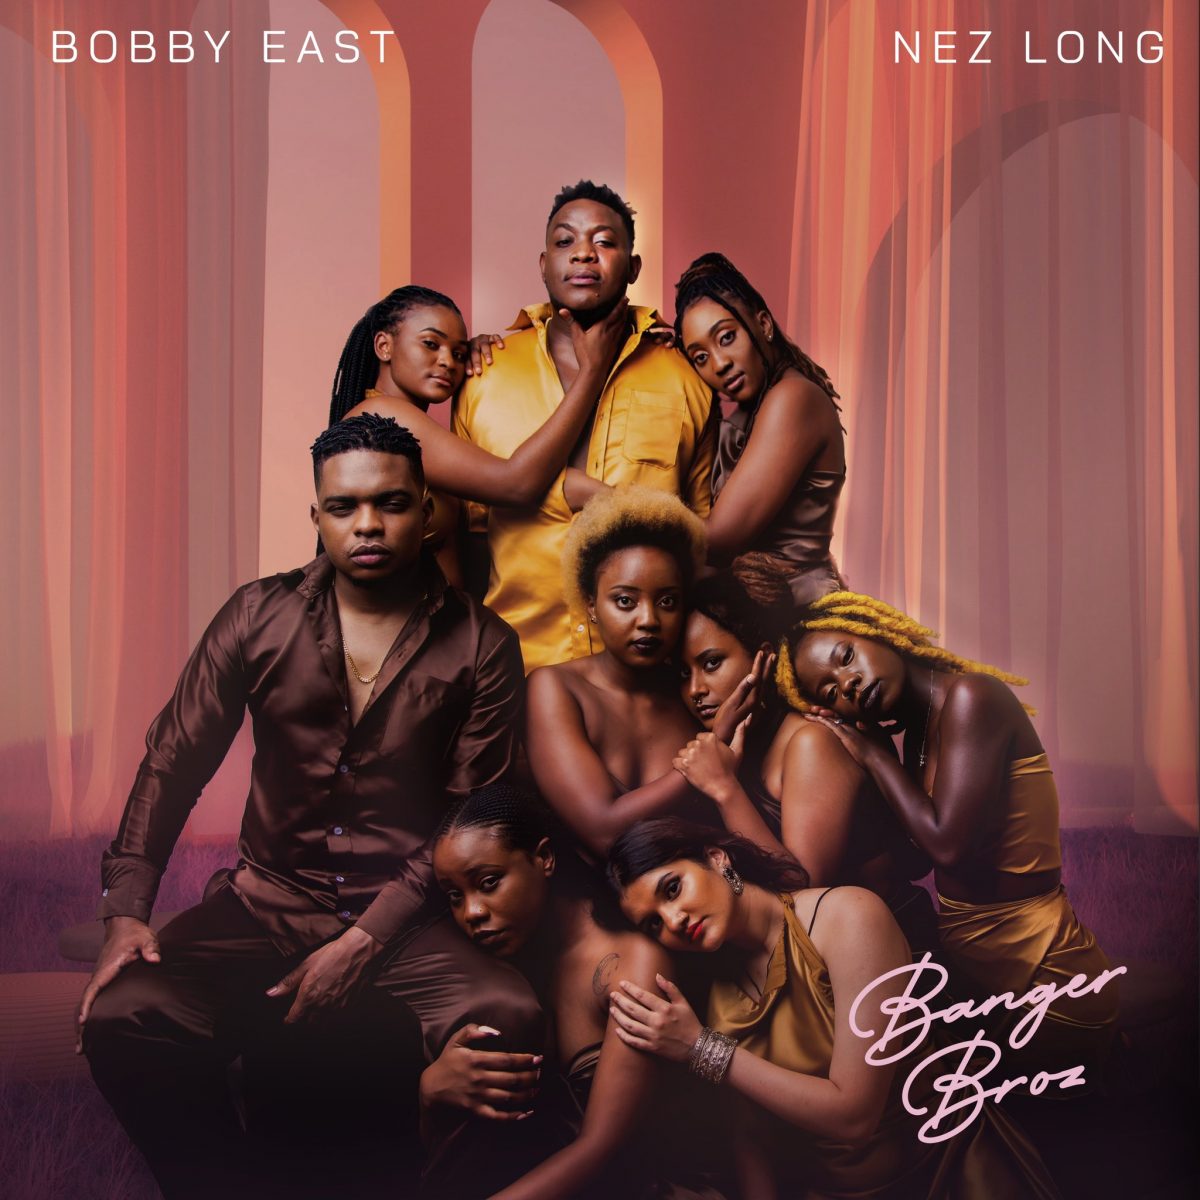 Bobby East & Nez Long announce 'Banger Broz' joint album